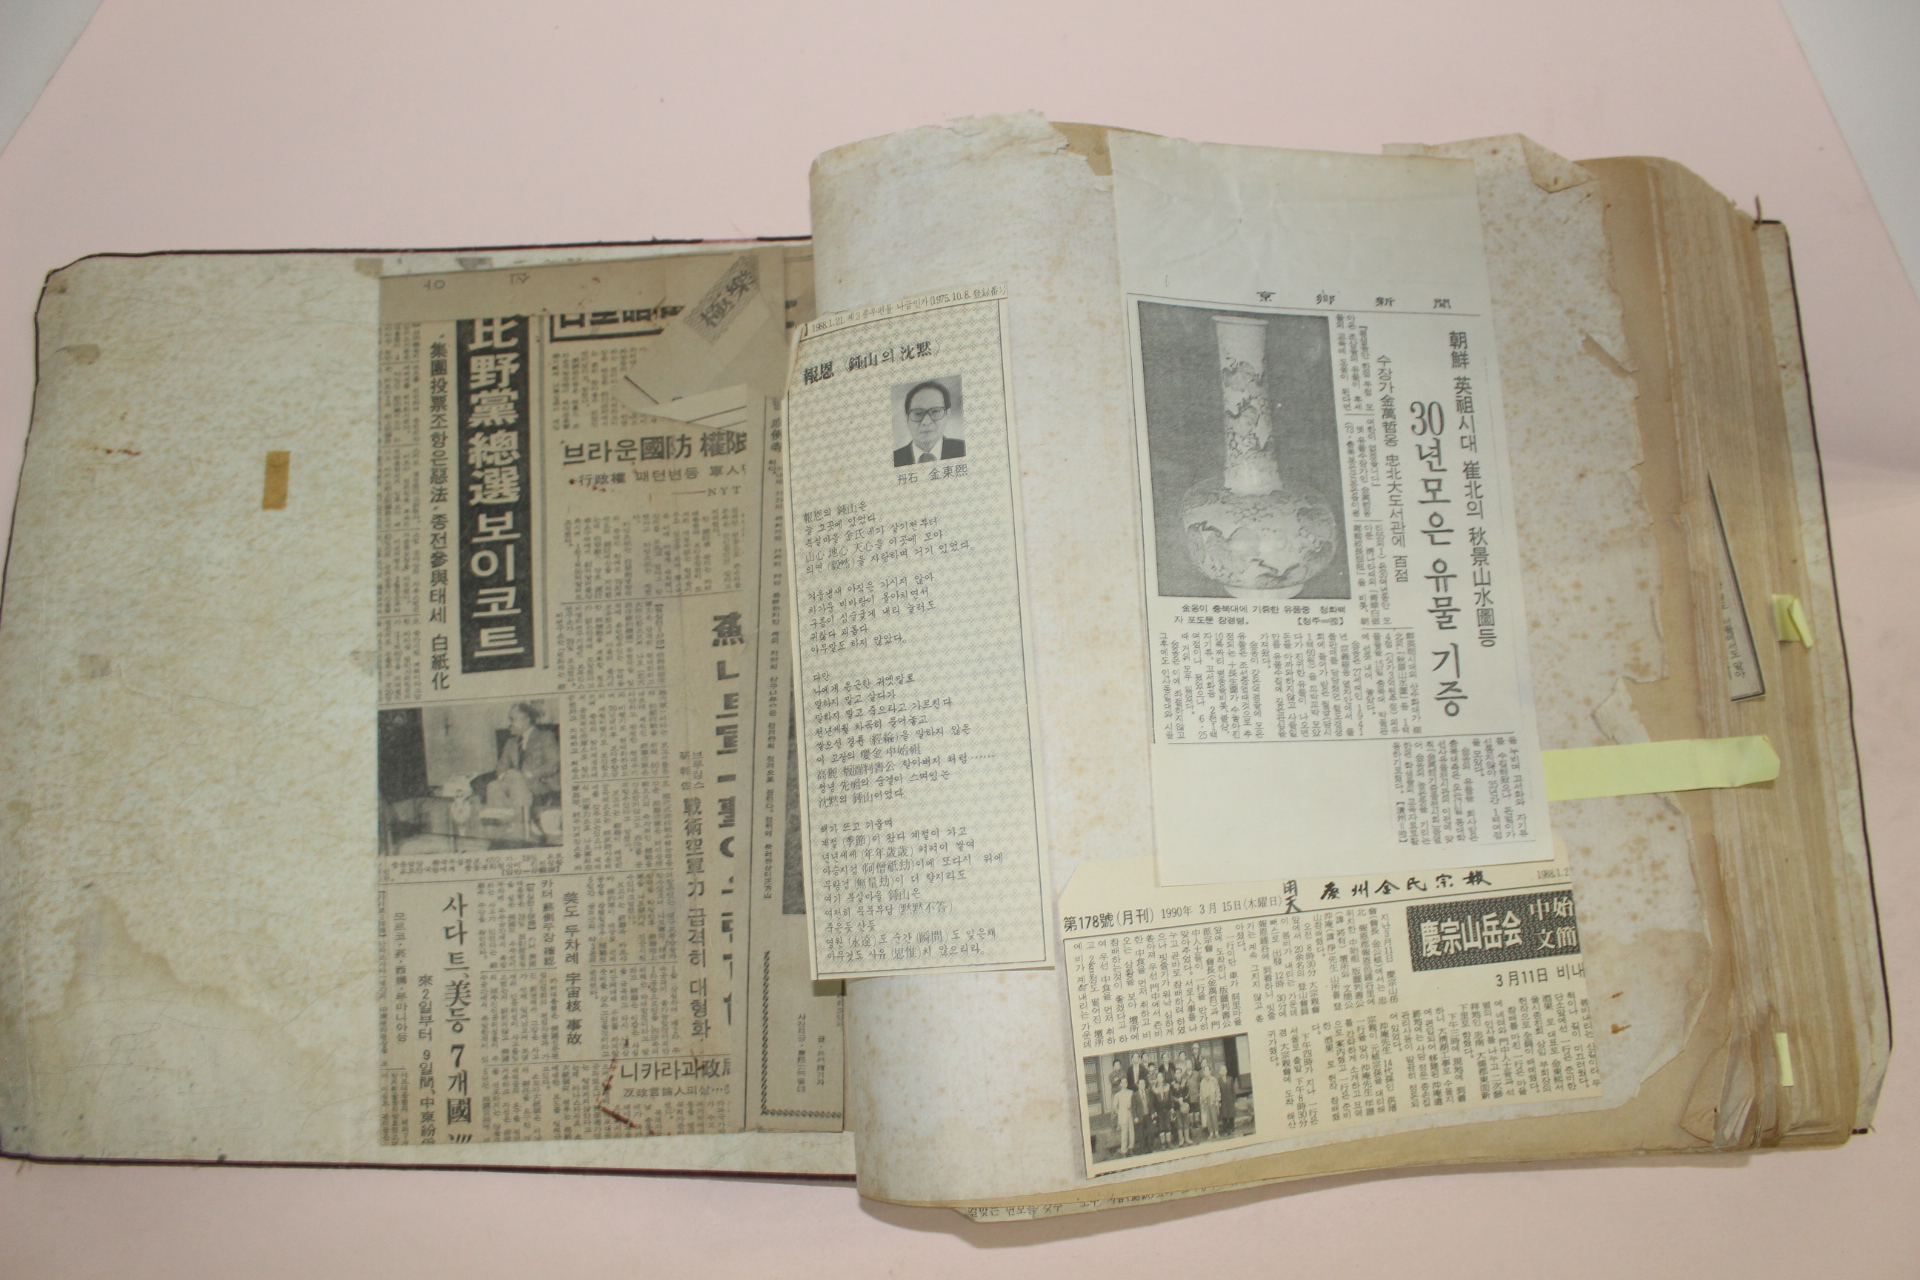 1978년,79년 충북보은 김만철(金萬哲)선생 내방인사 방명록과 보은관련스크렙